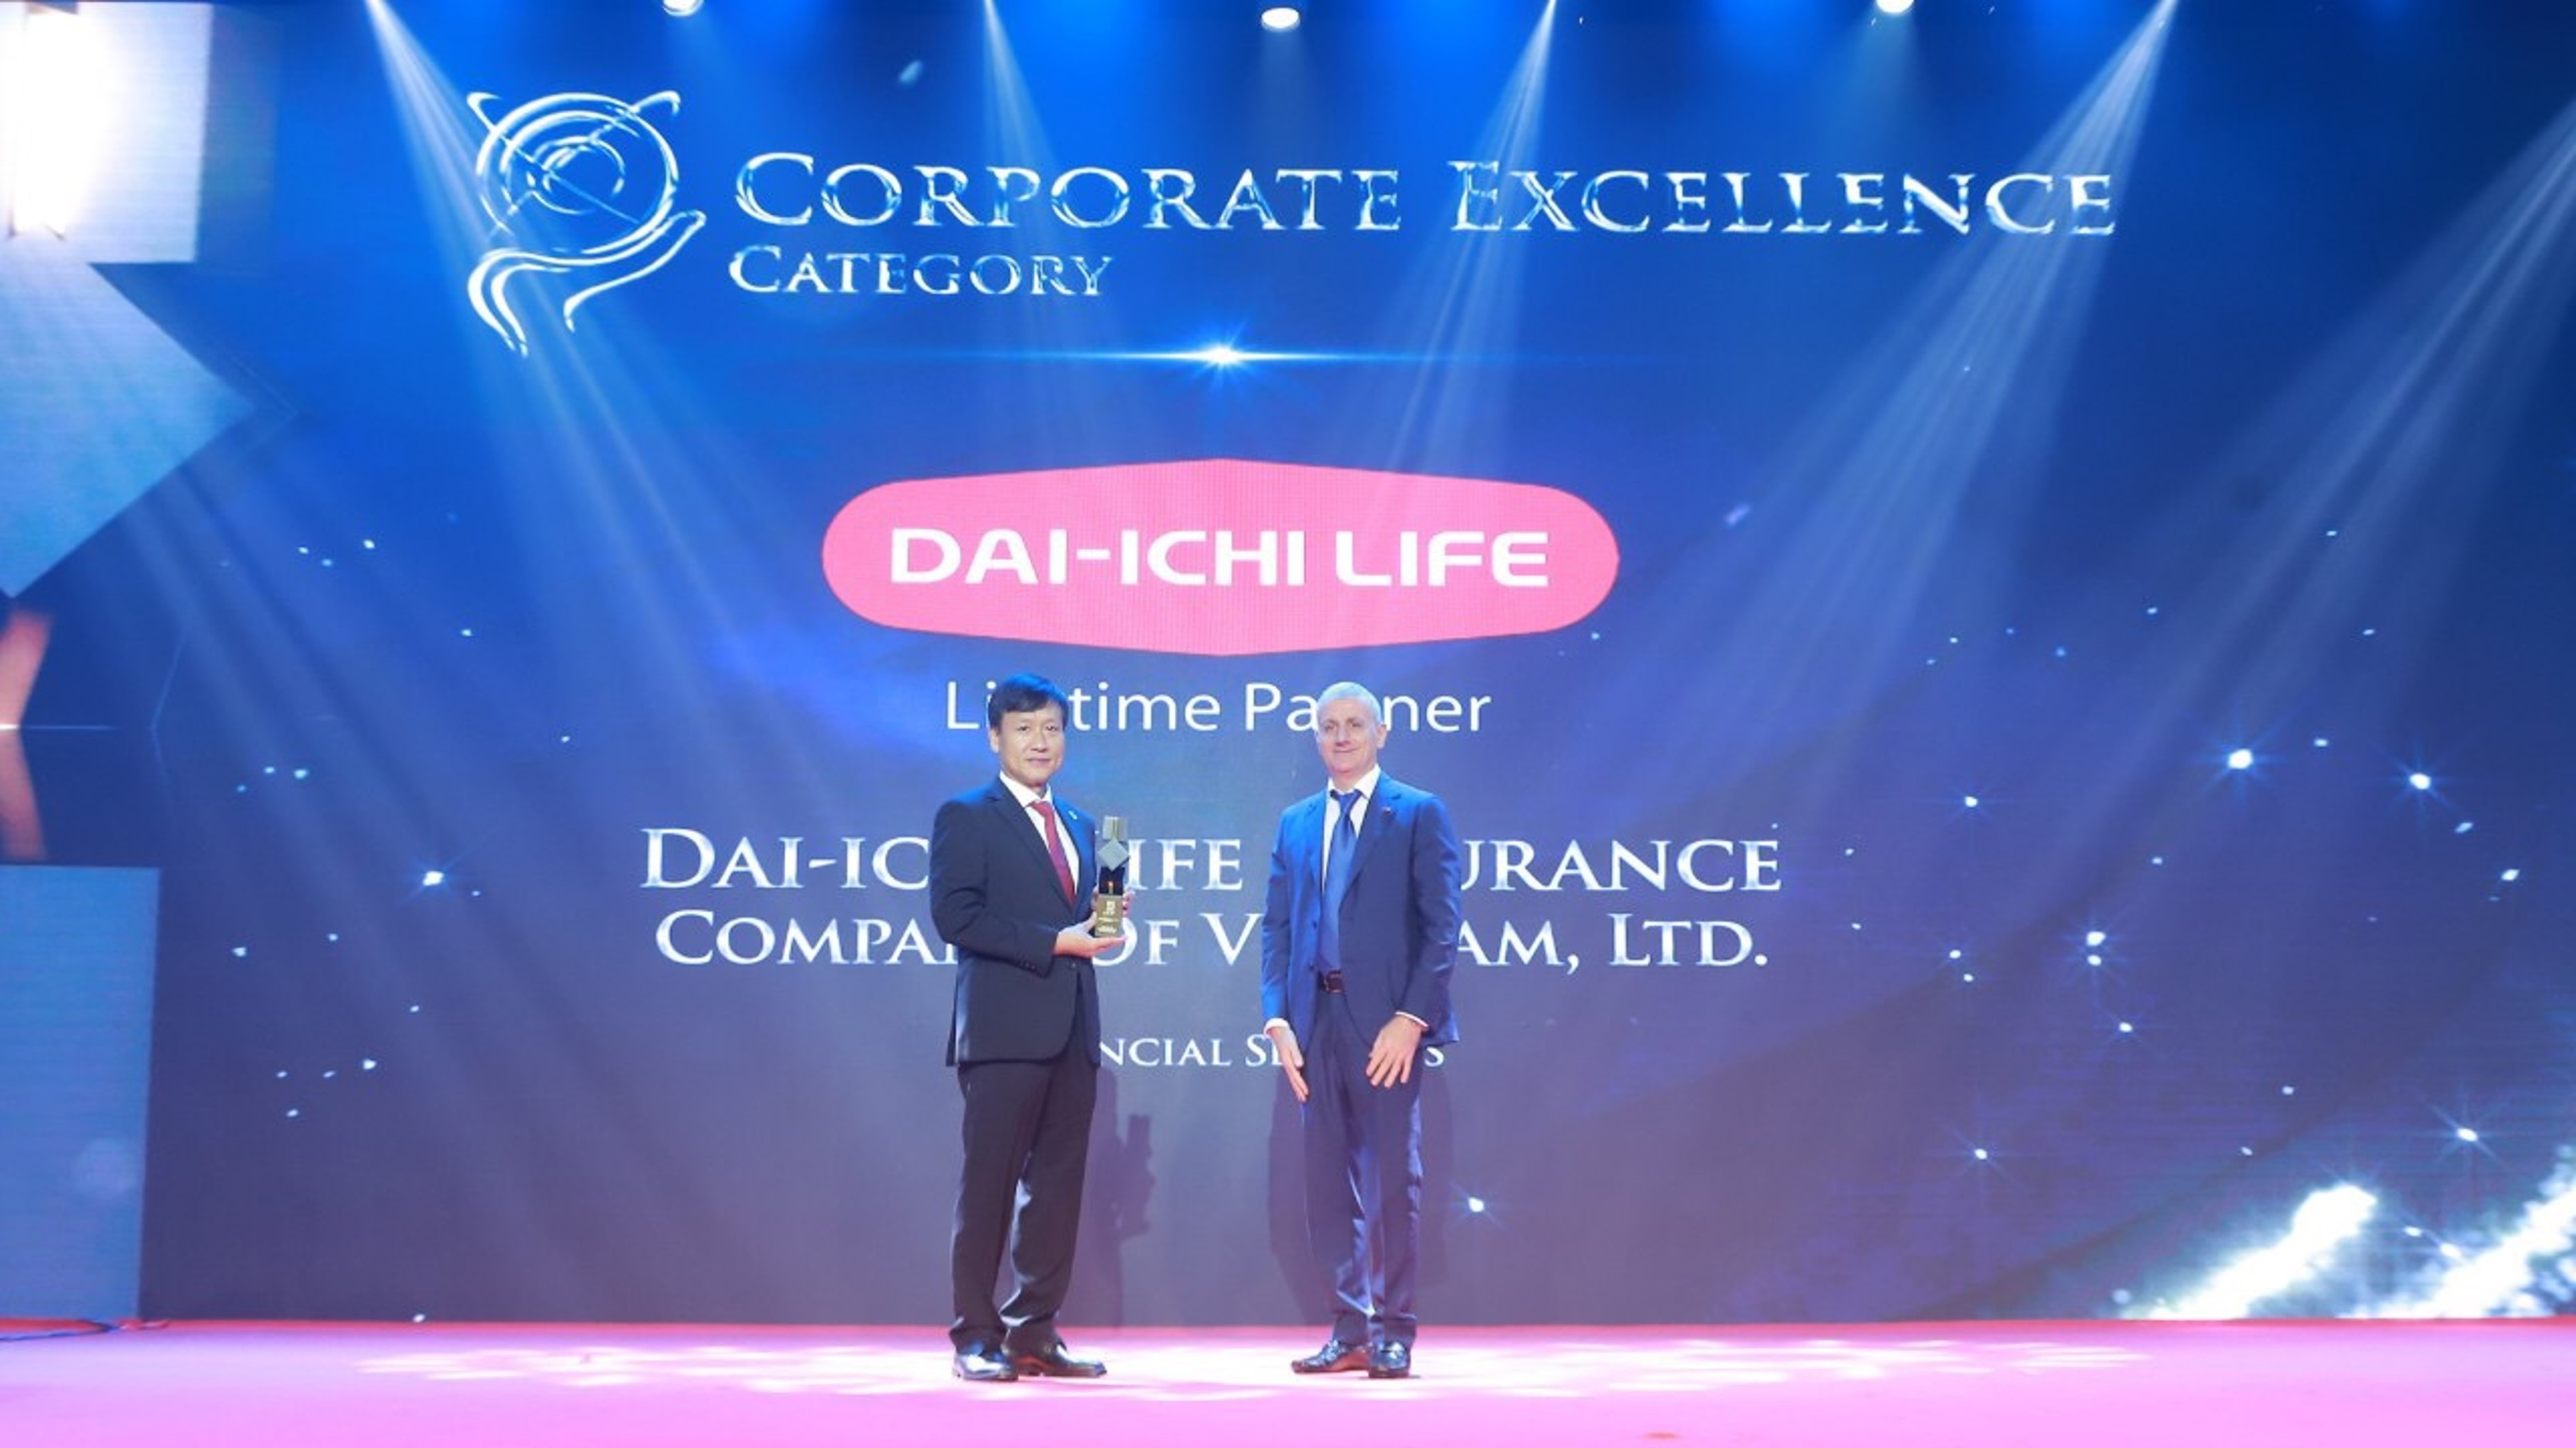  Ông Trần Đình Quân - Chủ tịch kiêm Tổng Giám đốc Dai-ichi Life Việt Nam (trái) nhận giải "Doanh nghiệp xuất sắc Châu Á" ("Corporate Excellence") ngày 25/02/2022